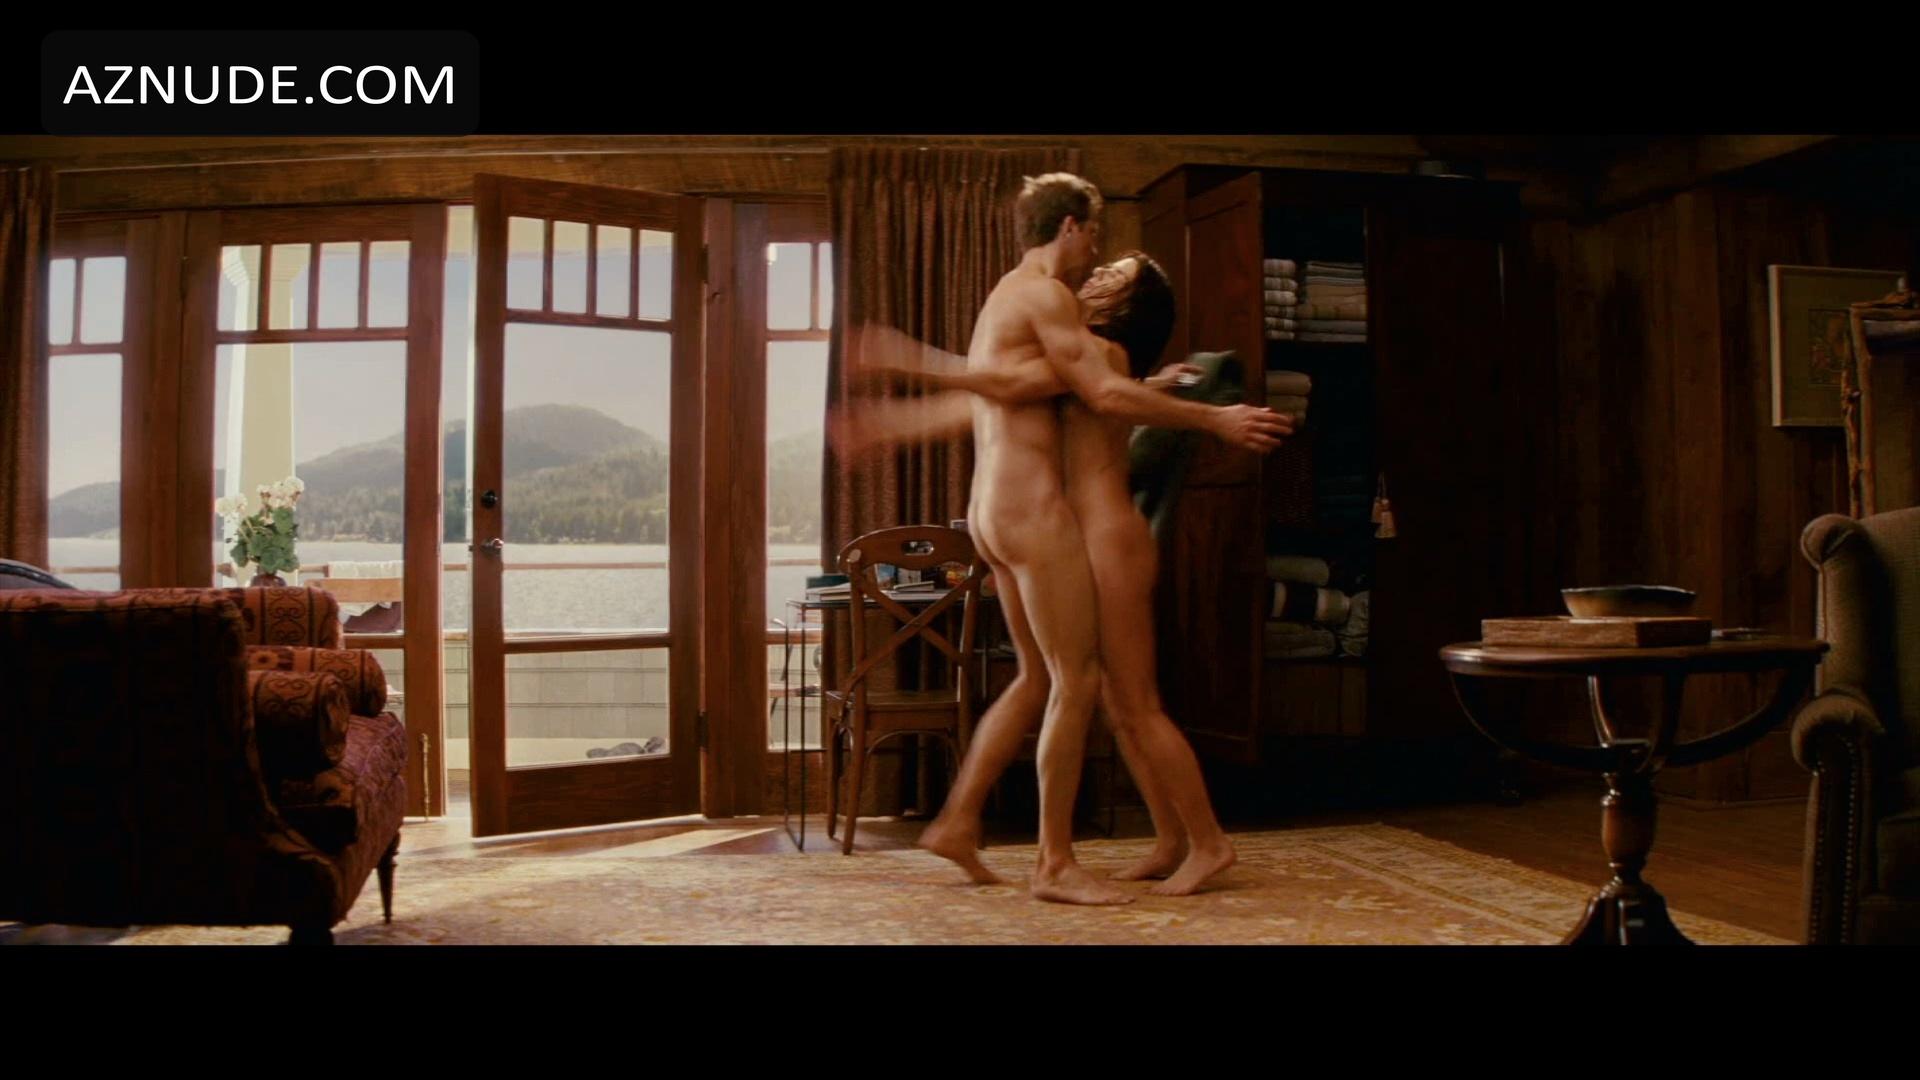 The Proposal Nude Scenes Aznude Men